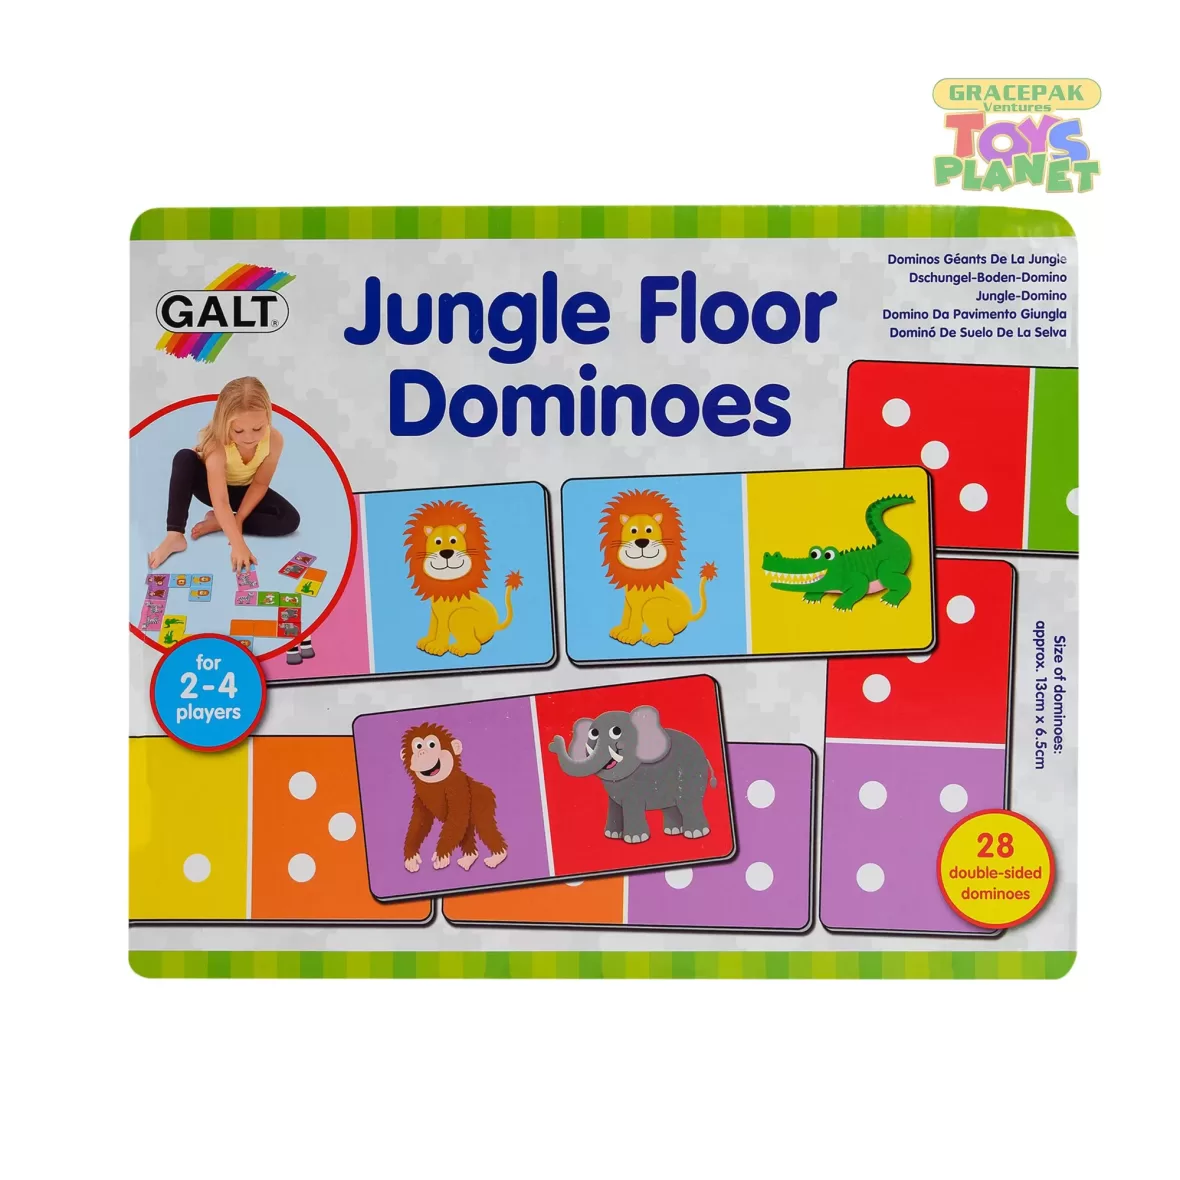 Jungle Floor Dominoes